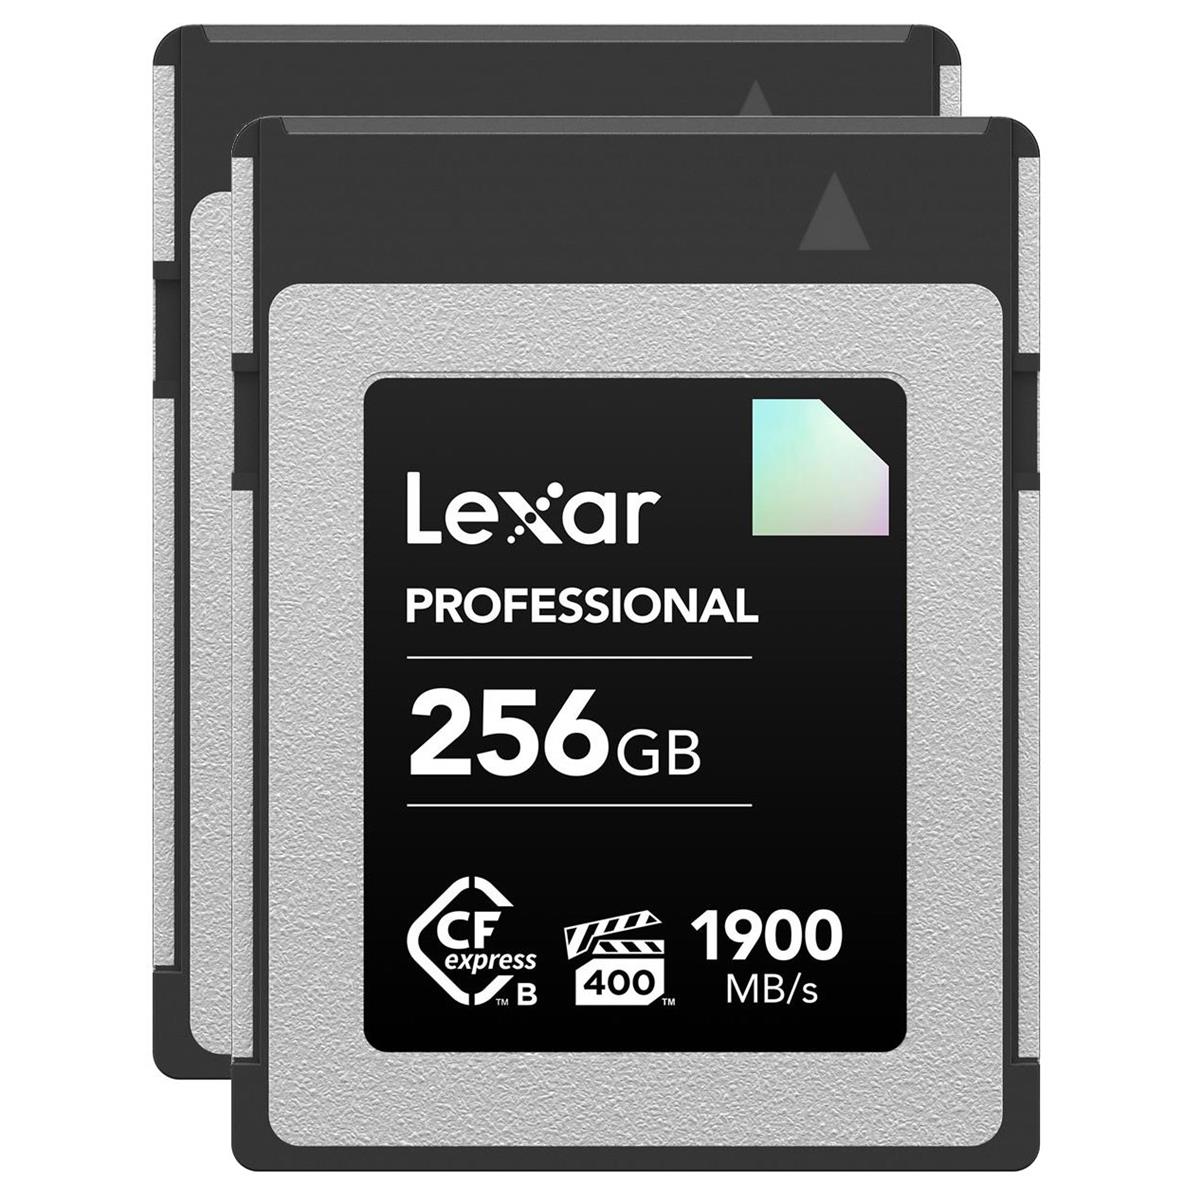 Карта памяти Lexar Diamond Series Professional 256 ГБ CFexpress Type-B, упаковка из 2 шт.